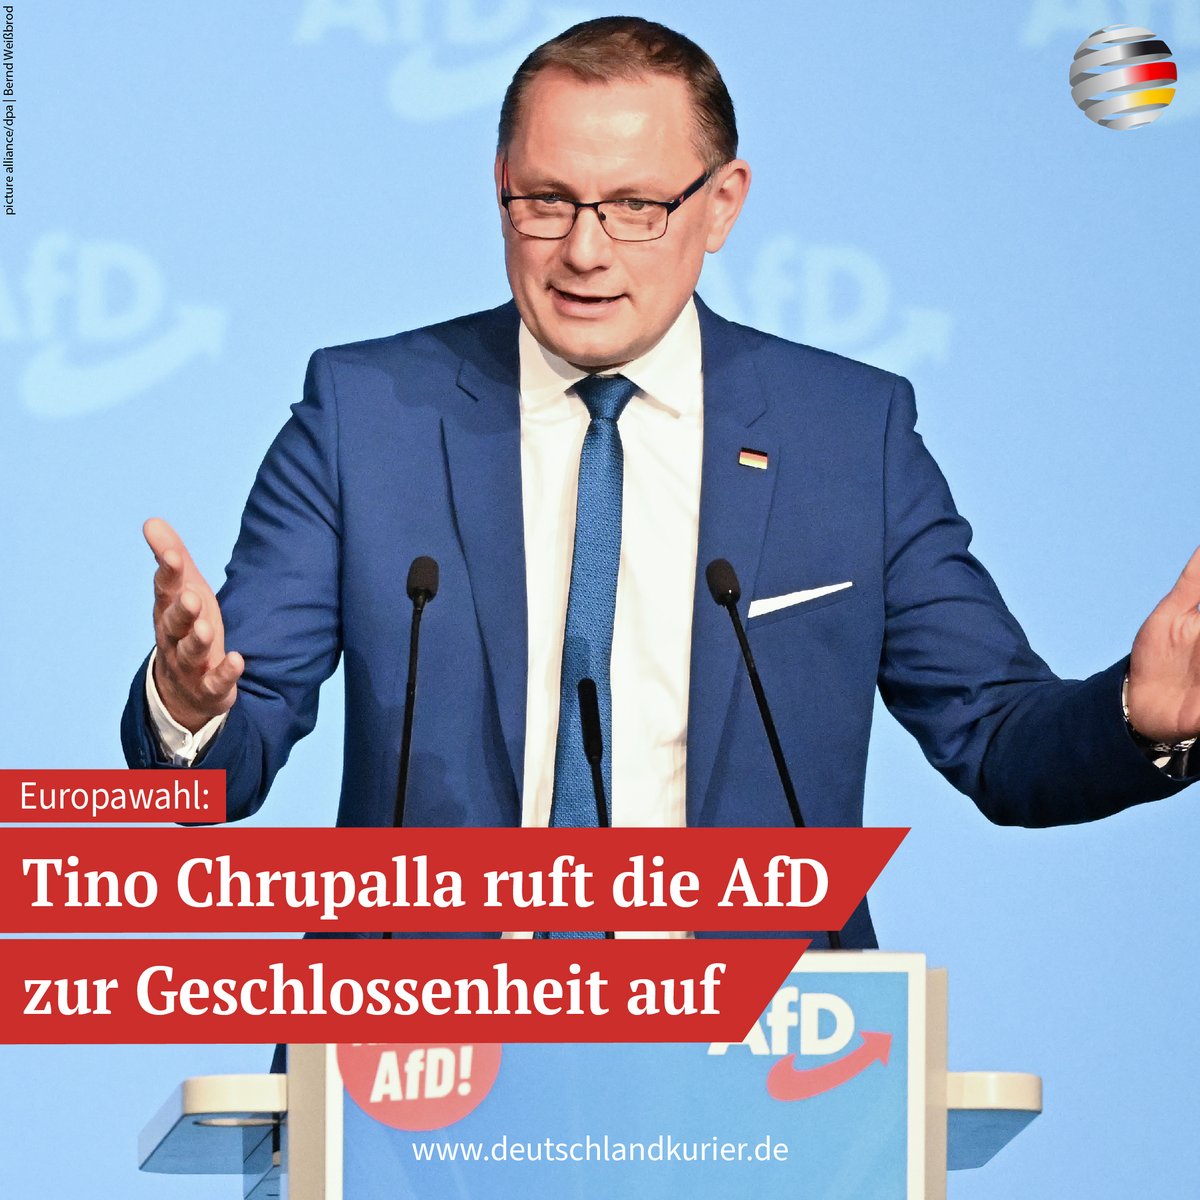 Die @AfD hat am Wochenende im baden-württembergischen #Donaueschingen ihren Wahlkampf zur Europawahl am 9. Juni gestartet. Parteichef @Tino_Chrupalla rief die Partei zur Geschlossenheit auf: „Wir werden mit dem Wahlkampf zeigen, dass man uns nicht so schnell unterkriegen kann und…